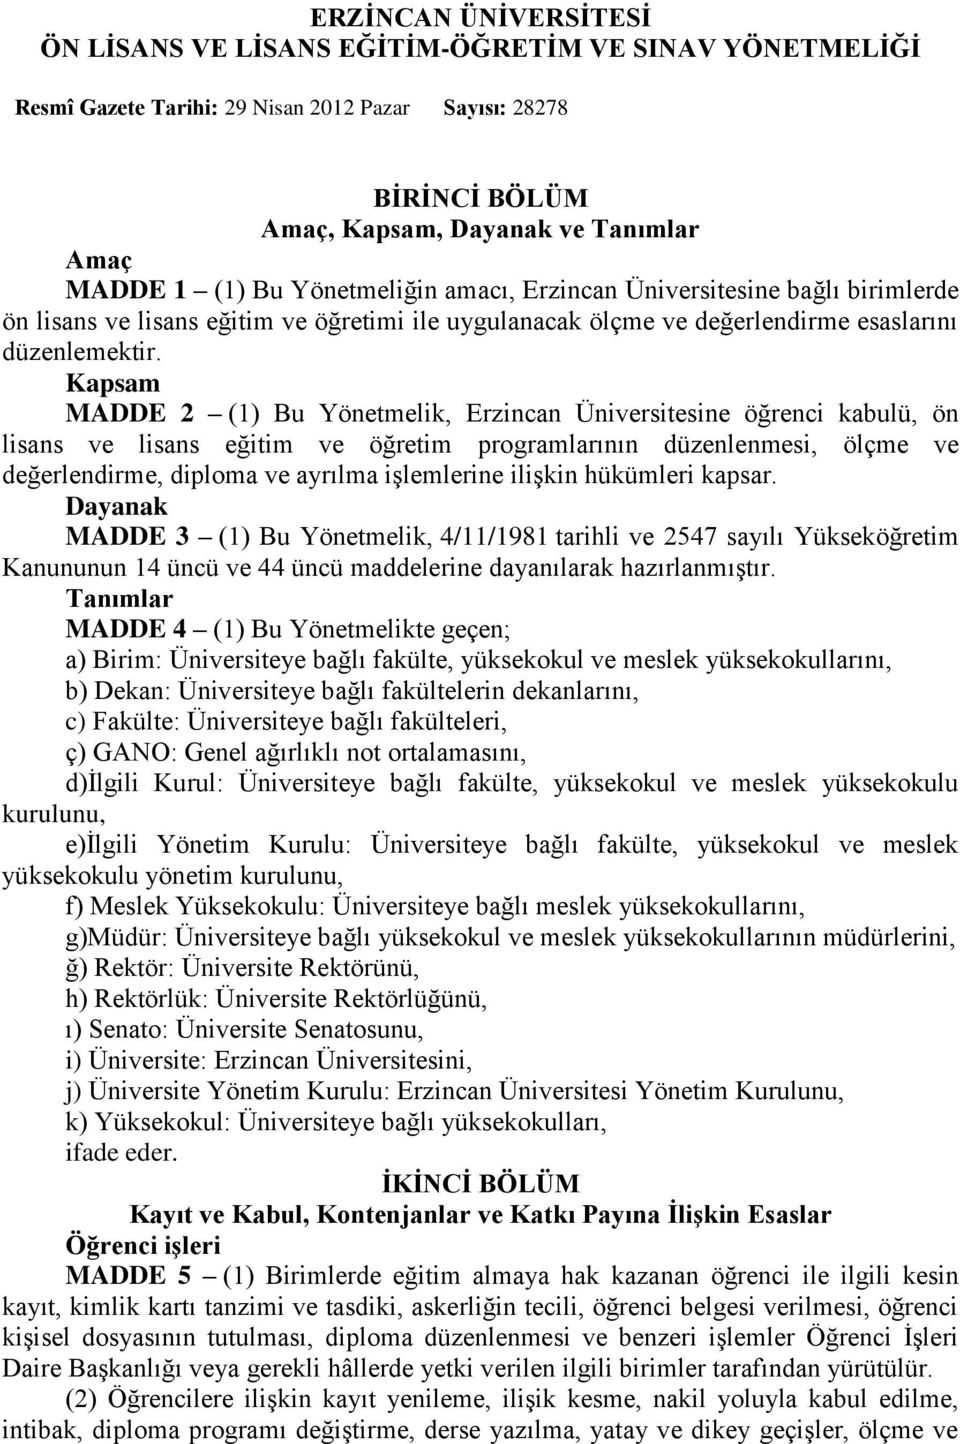 Kapsam MADDE 2 (1) Bu Yönetmelik, Erzincan Üniversitesine öğrenci kabulü, ön lisans ve lisans eğitim ve öğretim programlarının düzenlenmesi, ölçme ve değerlendirme, diploma ve ayrılma işlemlerine